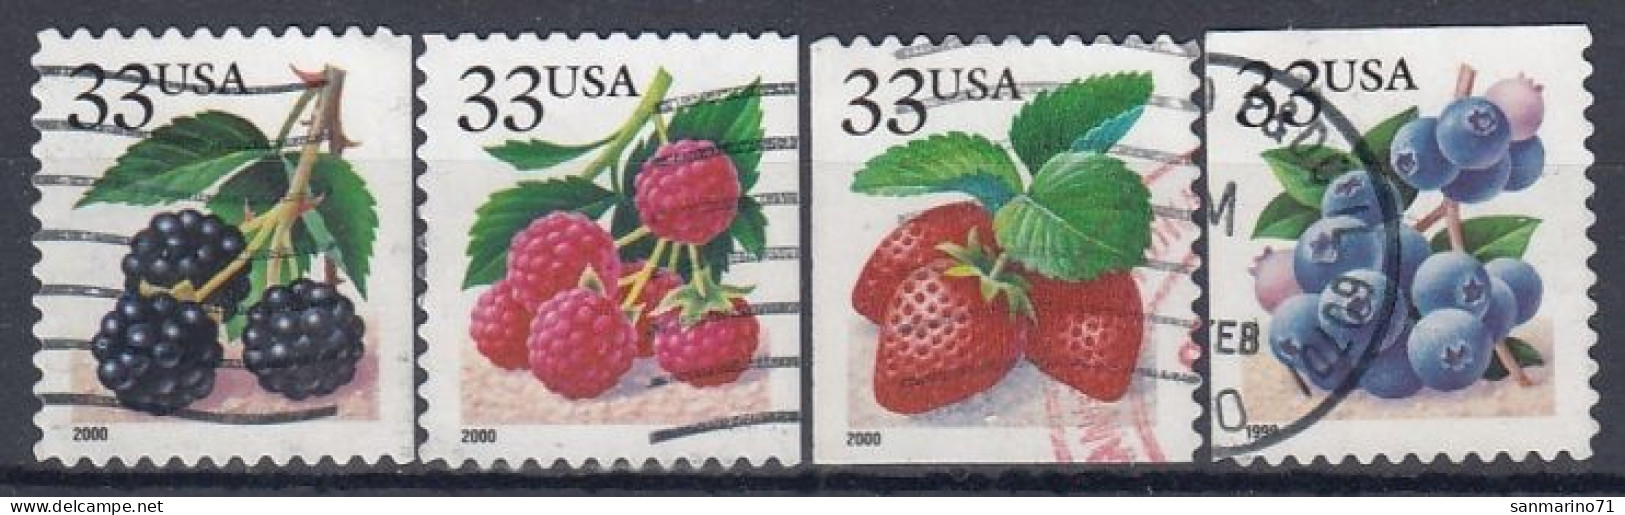 UNITED STATES 3110-3113,used,falc Hinged - Fruits